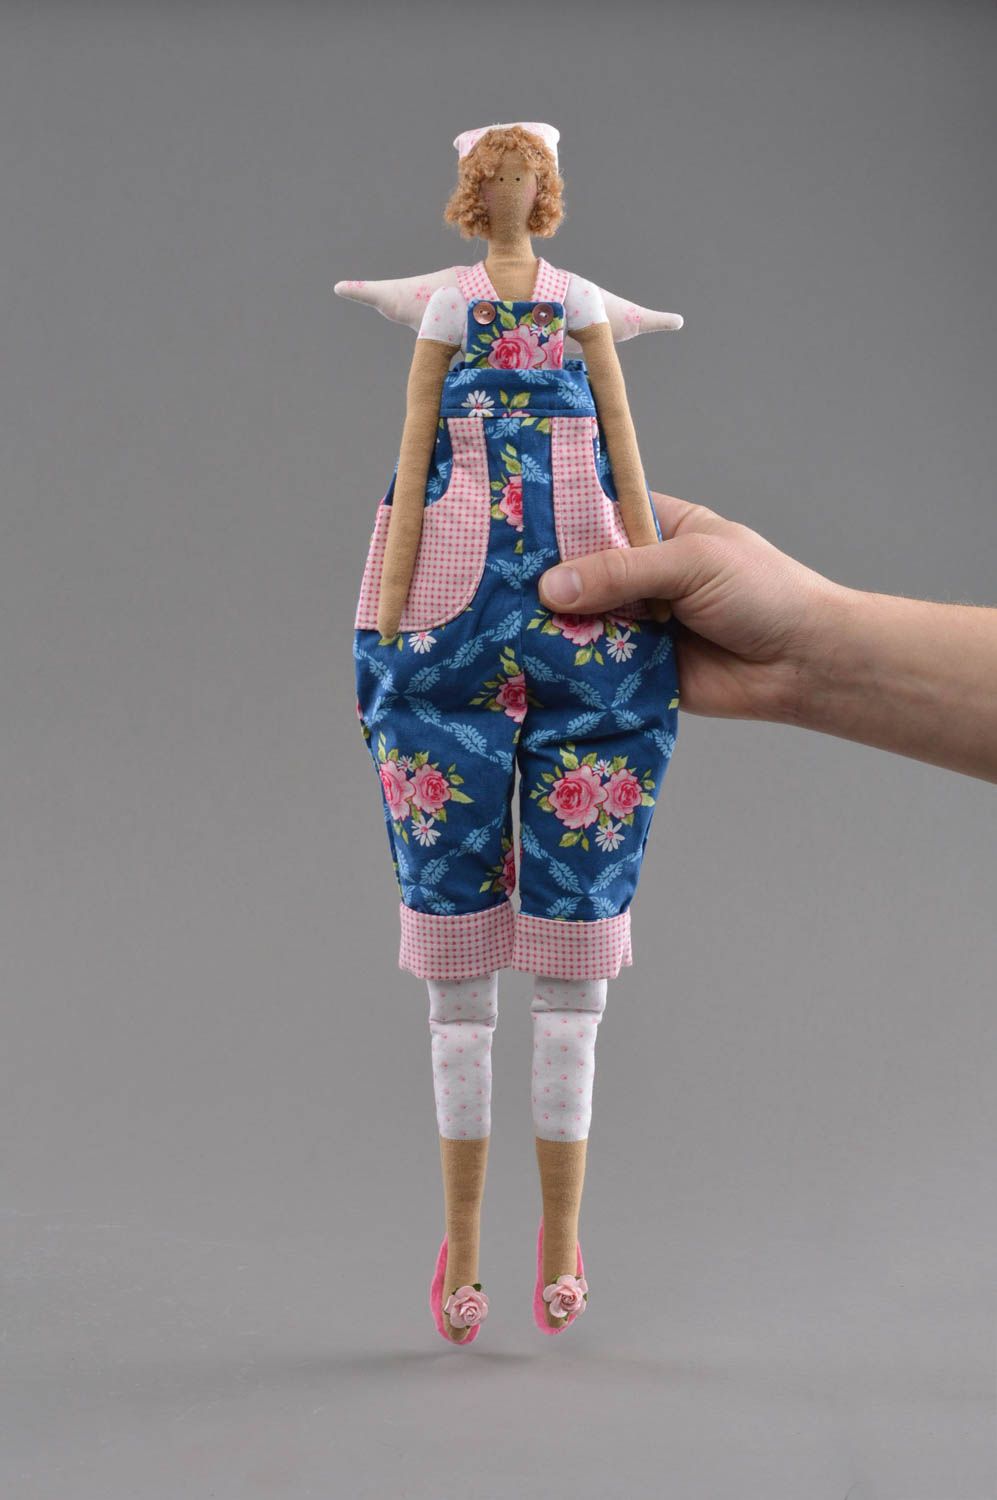 Interieur Puppe Engel aus Baumwolle handmade Spielzeug für Kinder künstlerisch foto 4